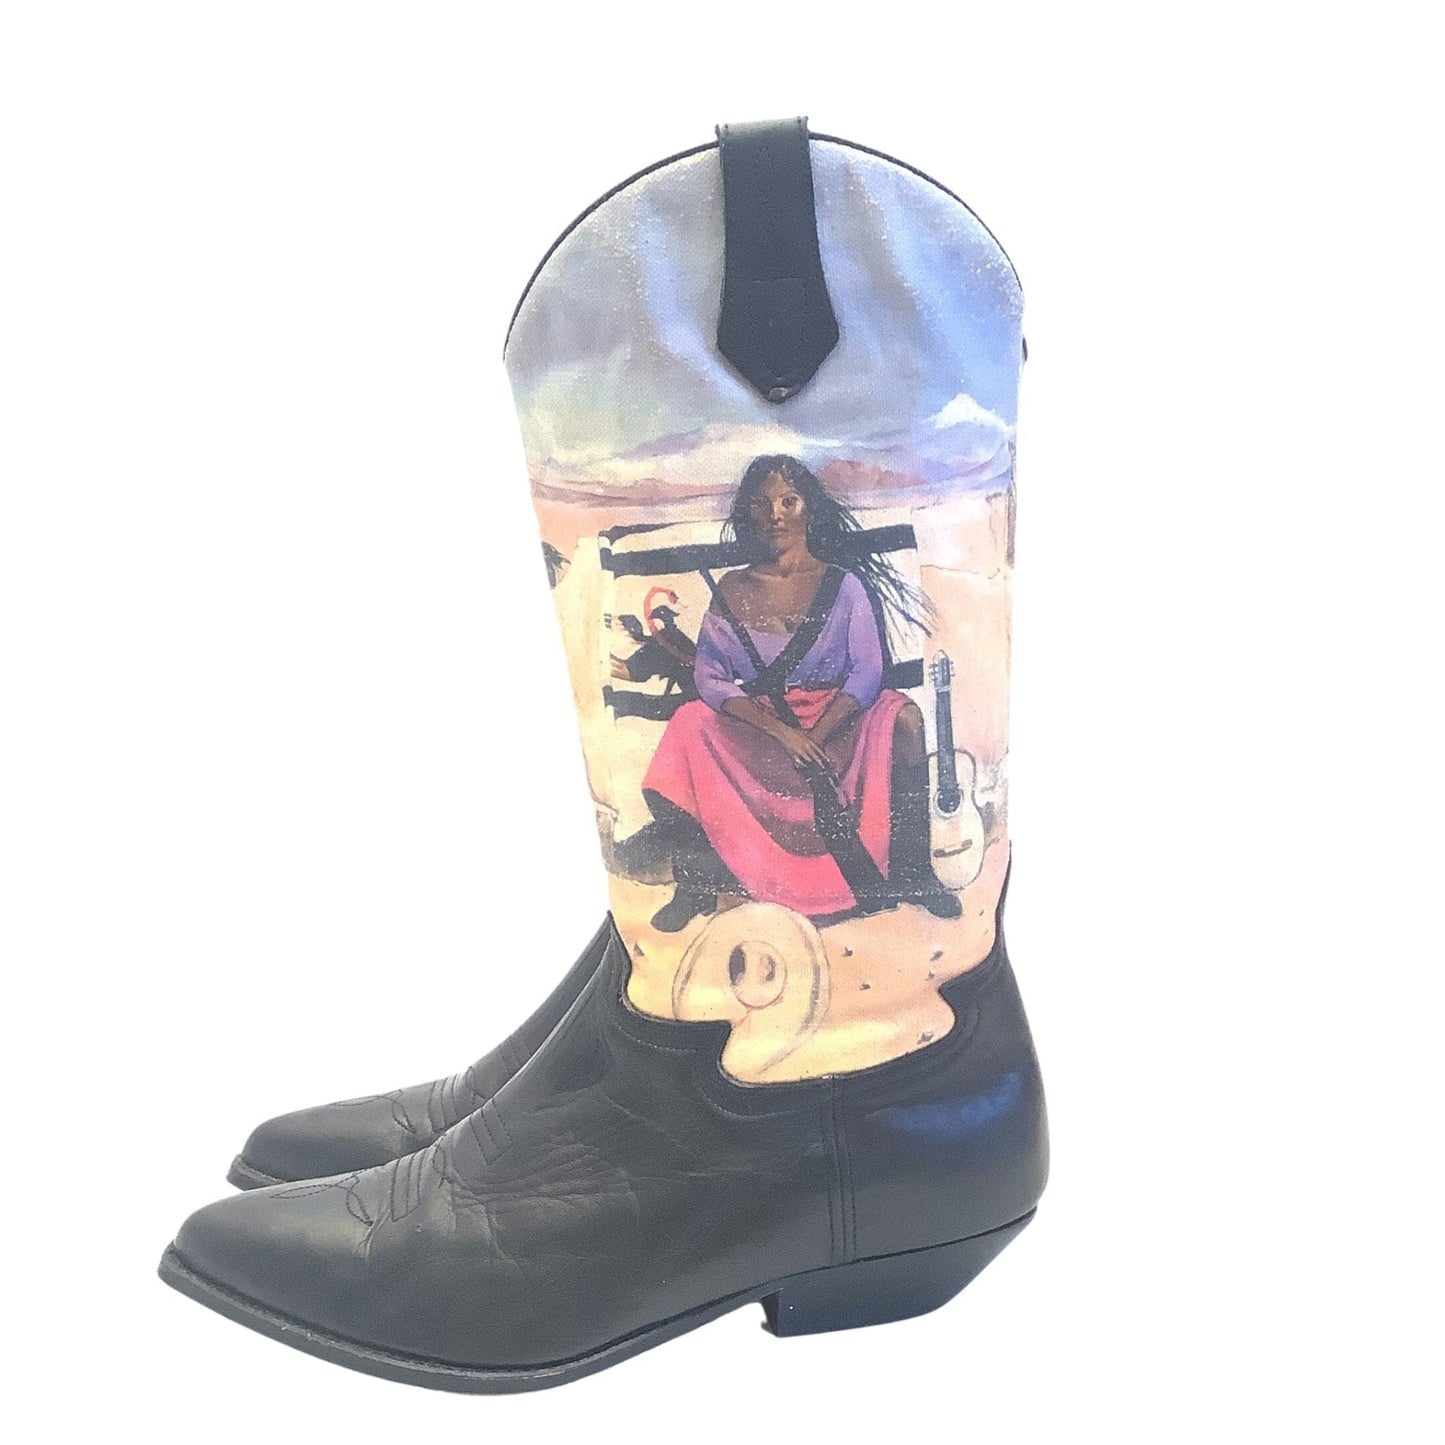 Seychelles Cowboy Boots 8 / Multi / Vintage 1980s